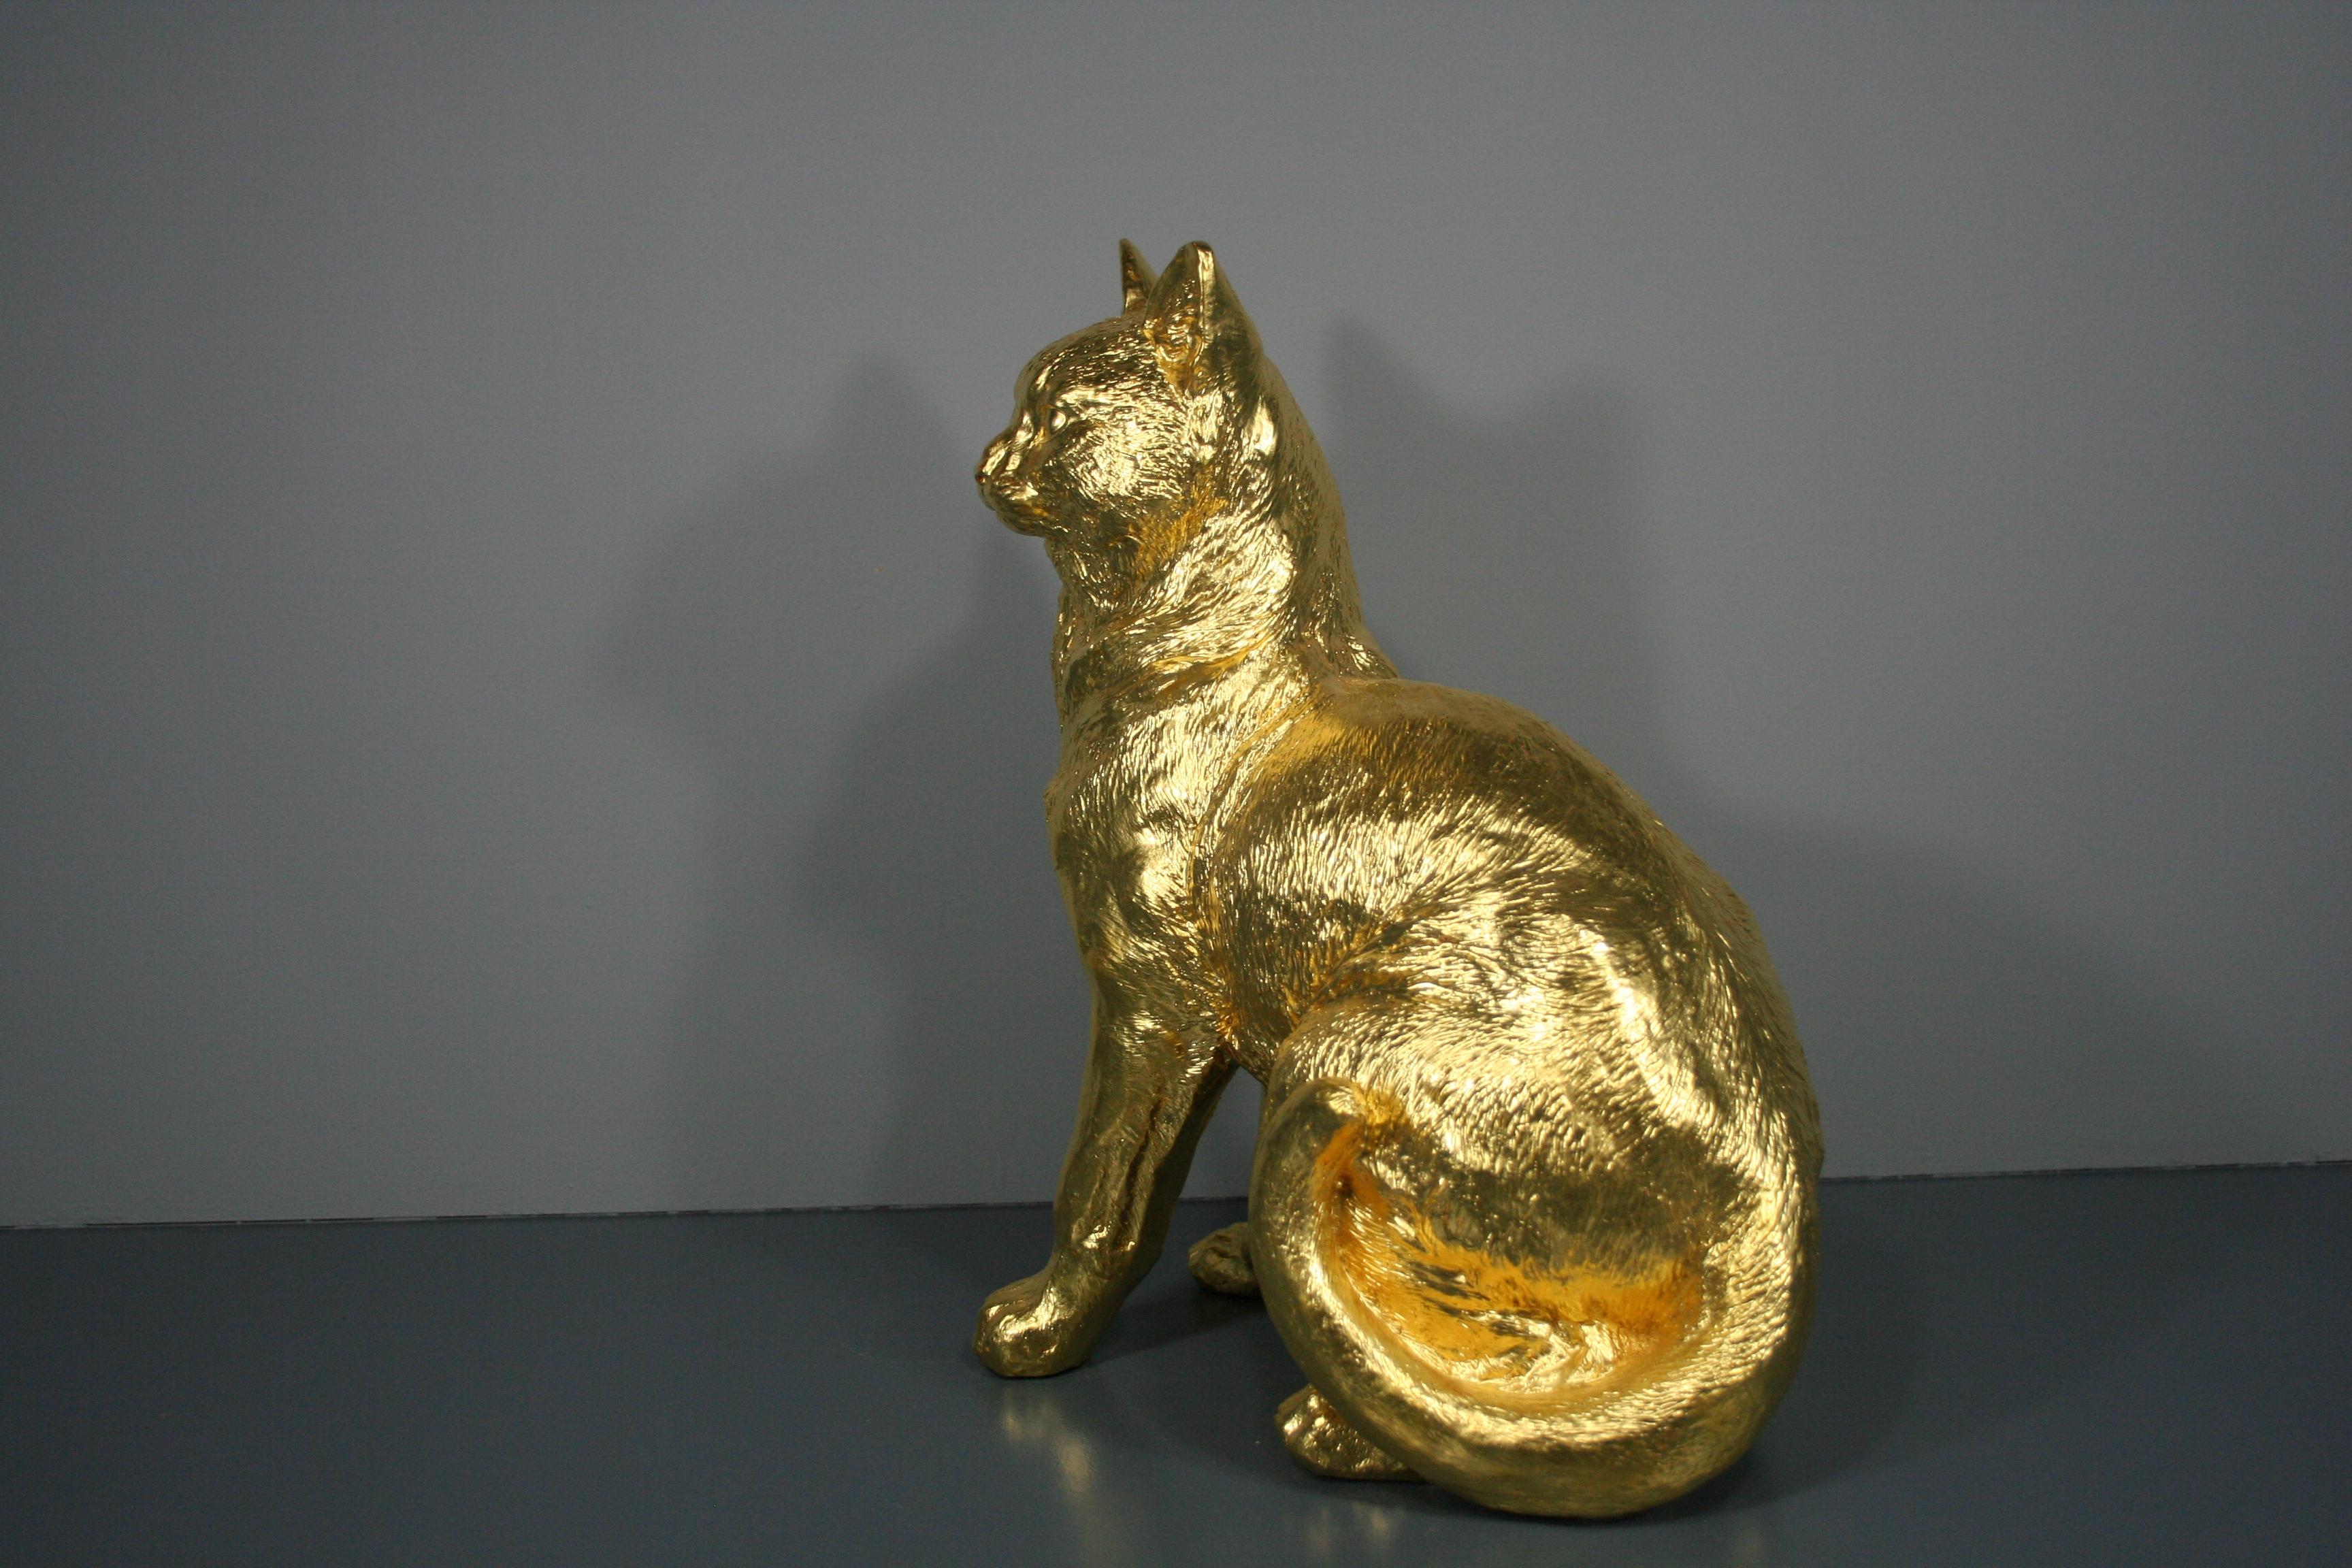 Paire de chats dorés et dorés 24 carats - Réalisme Sculpture par Steven